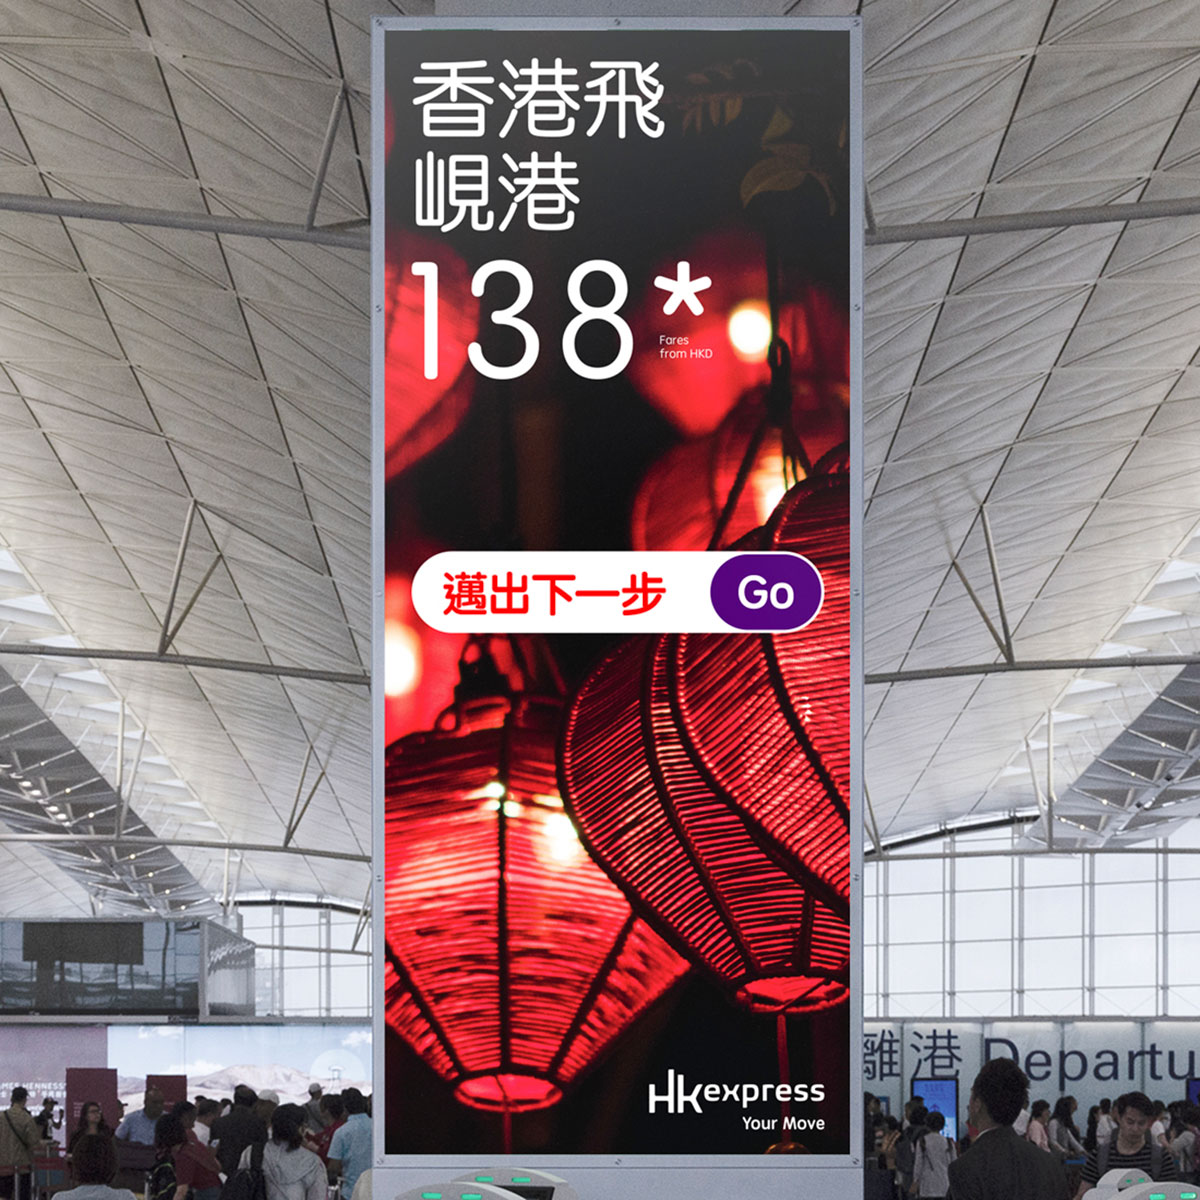 香港快运航空品牌策略定位与设计